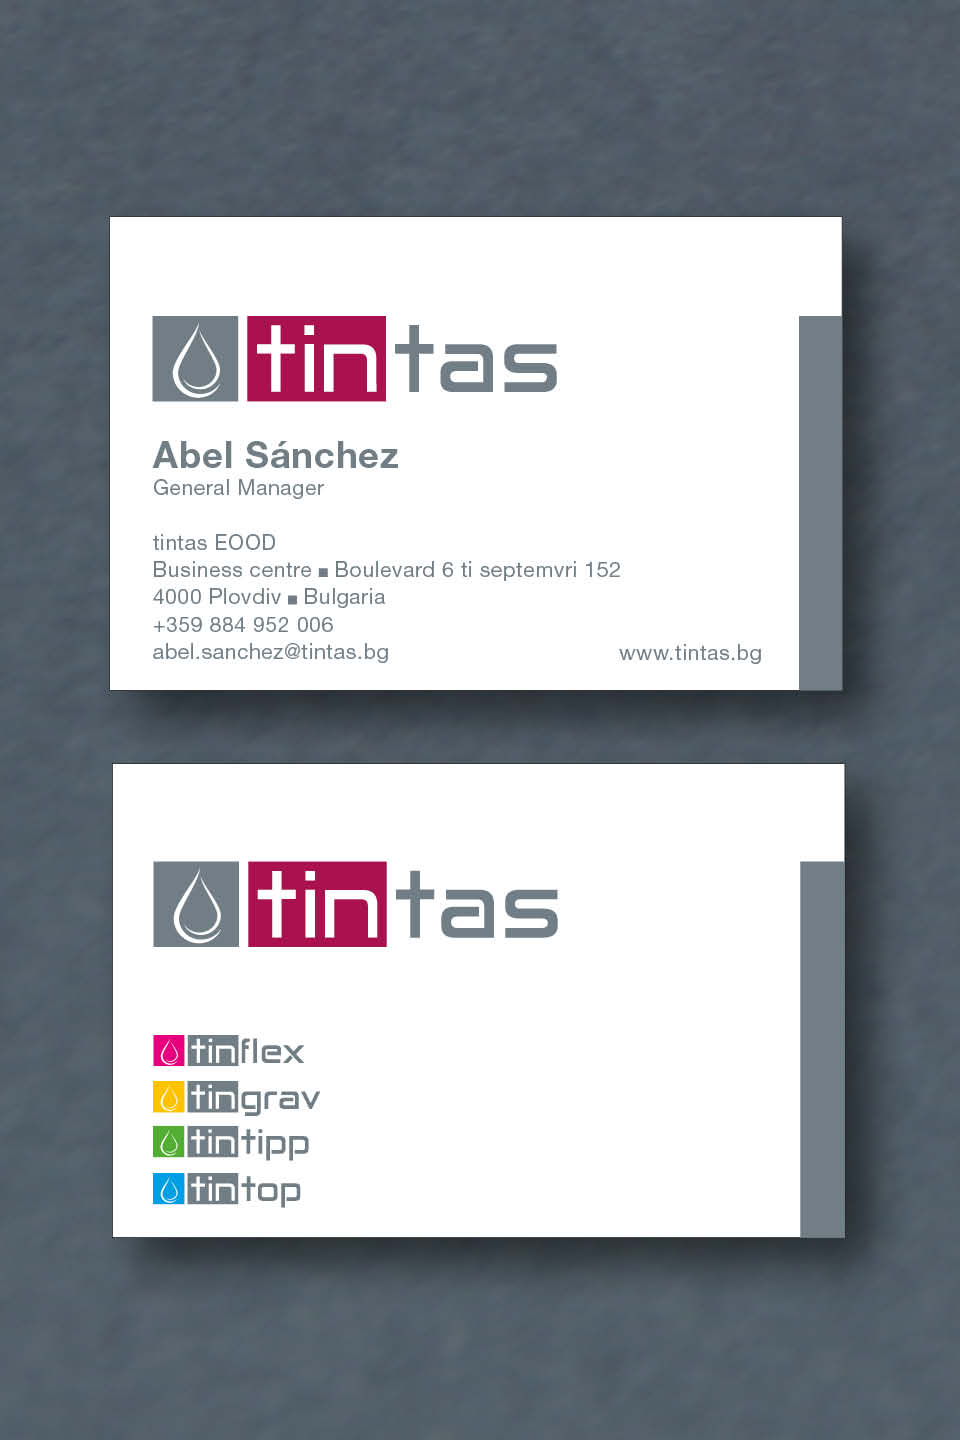 Logoentwicklung und Gestaltung "tintas"